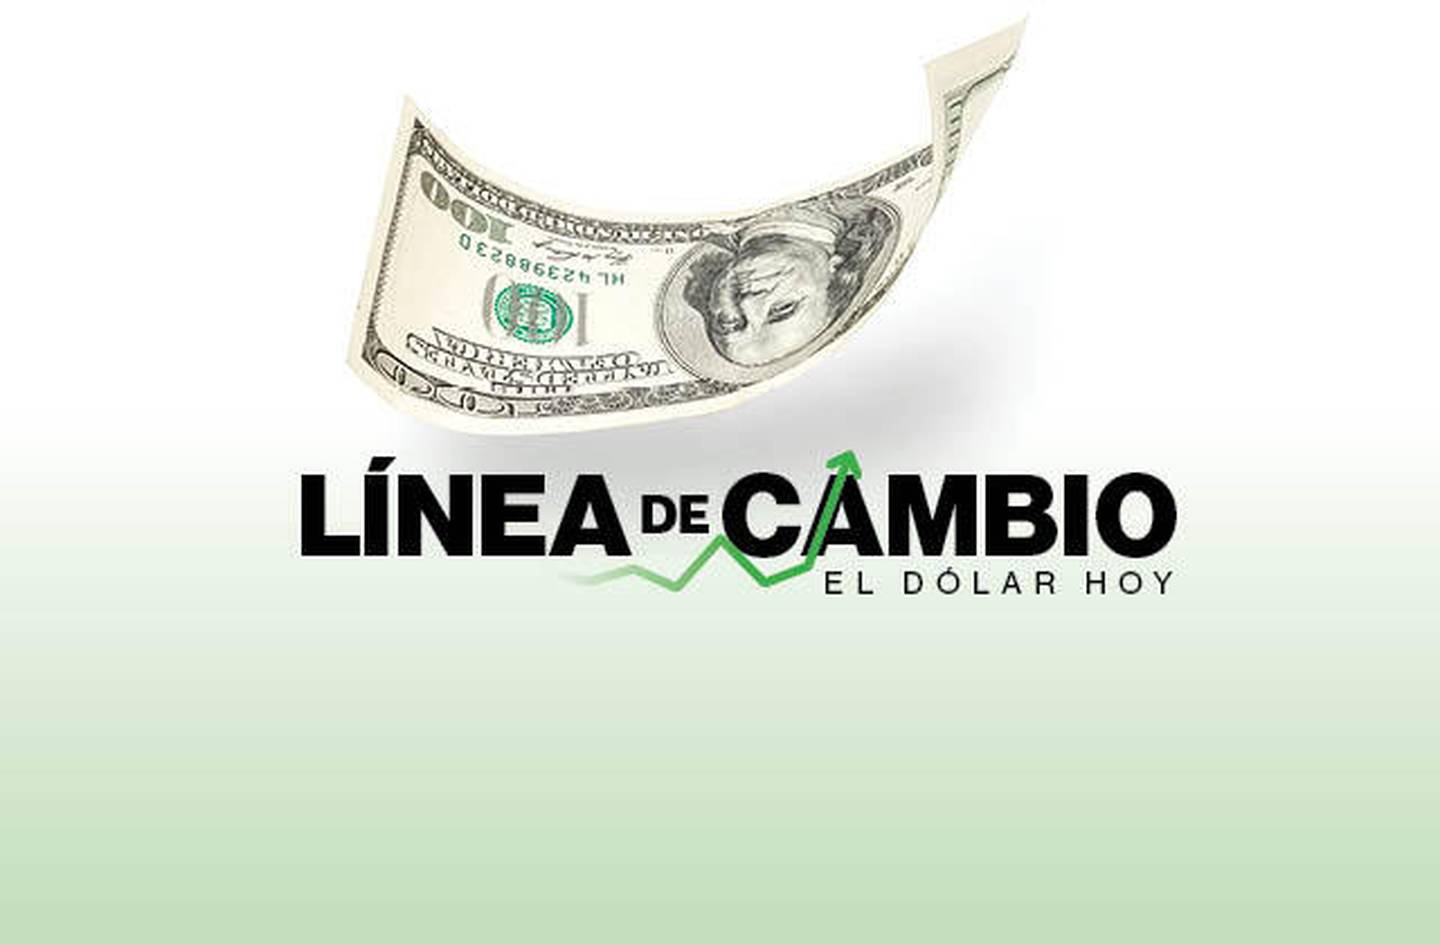 Dólar hoy: Real de Brasil se recupera; peso colombiano y chileno lideran pérdidas.